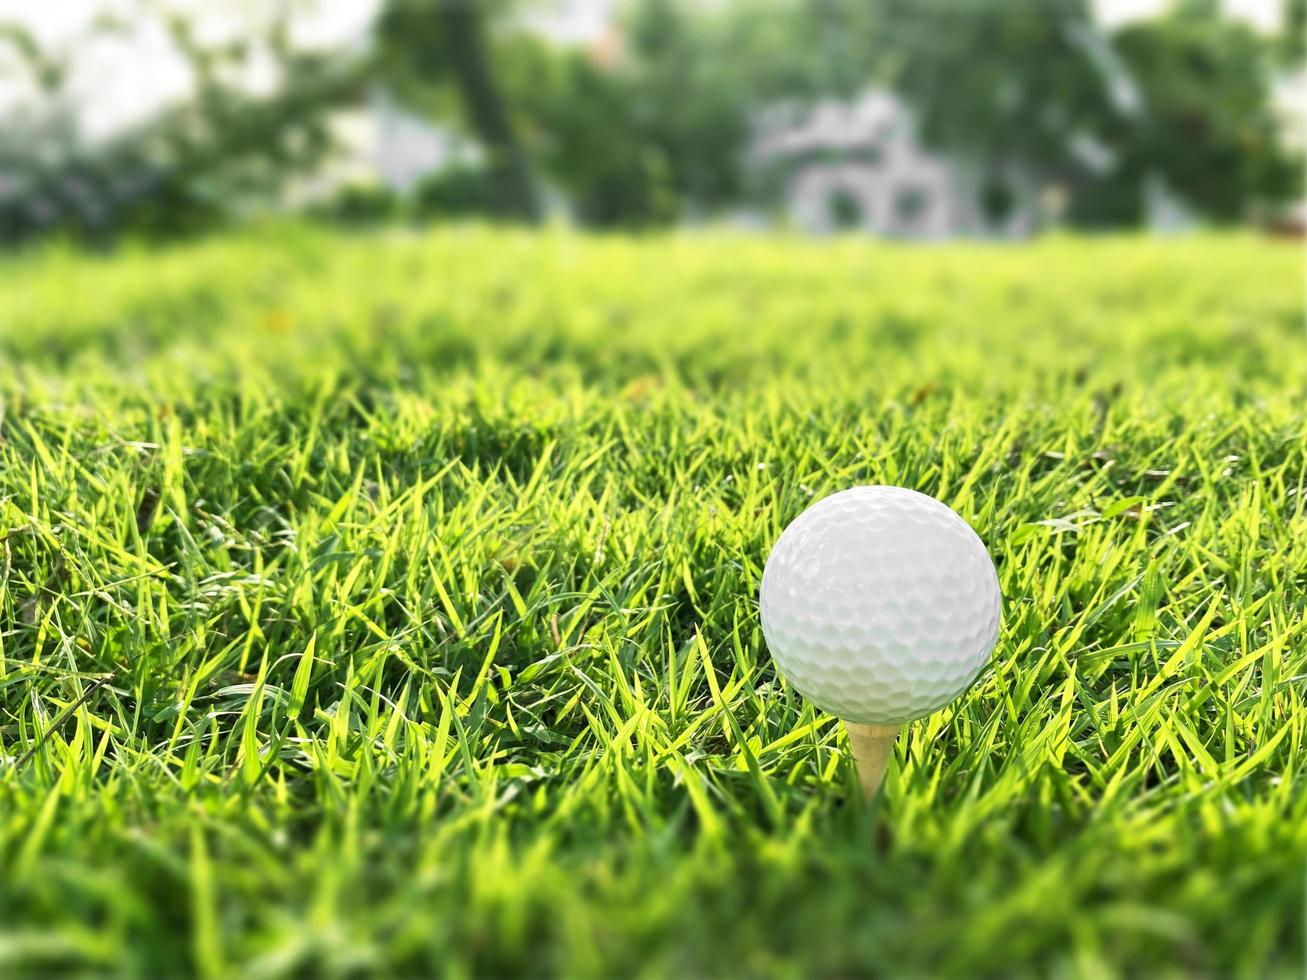 golfball nah oben auf grünem gras auf unscharfer schöner landschaft des golfplatzes mit sonnenaufgang, sonnenuntergangszeit auf hintergrund.konzept internationaler sport, der auf präzisionsfähigkeiten zur gesundheitsentspannung angewiesen ist. foto